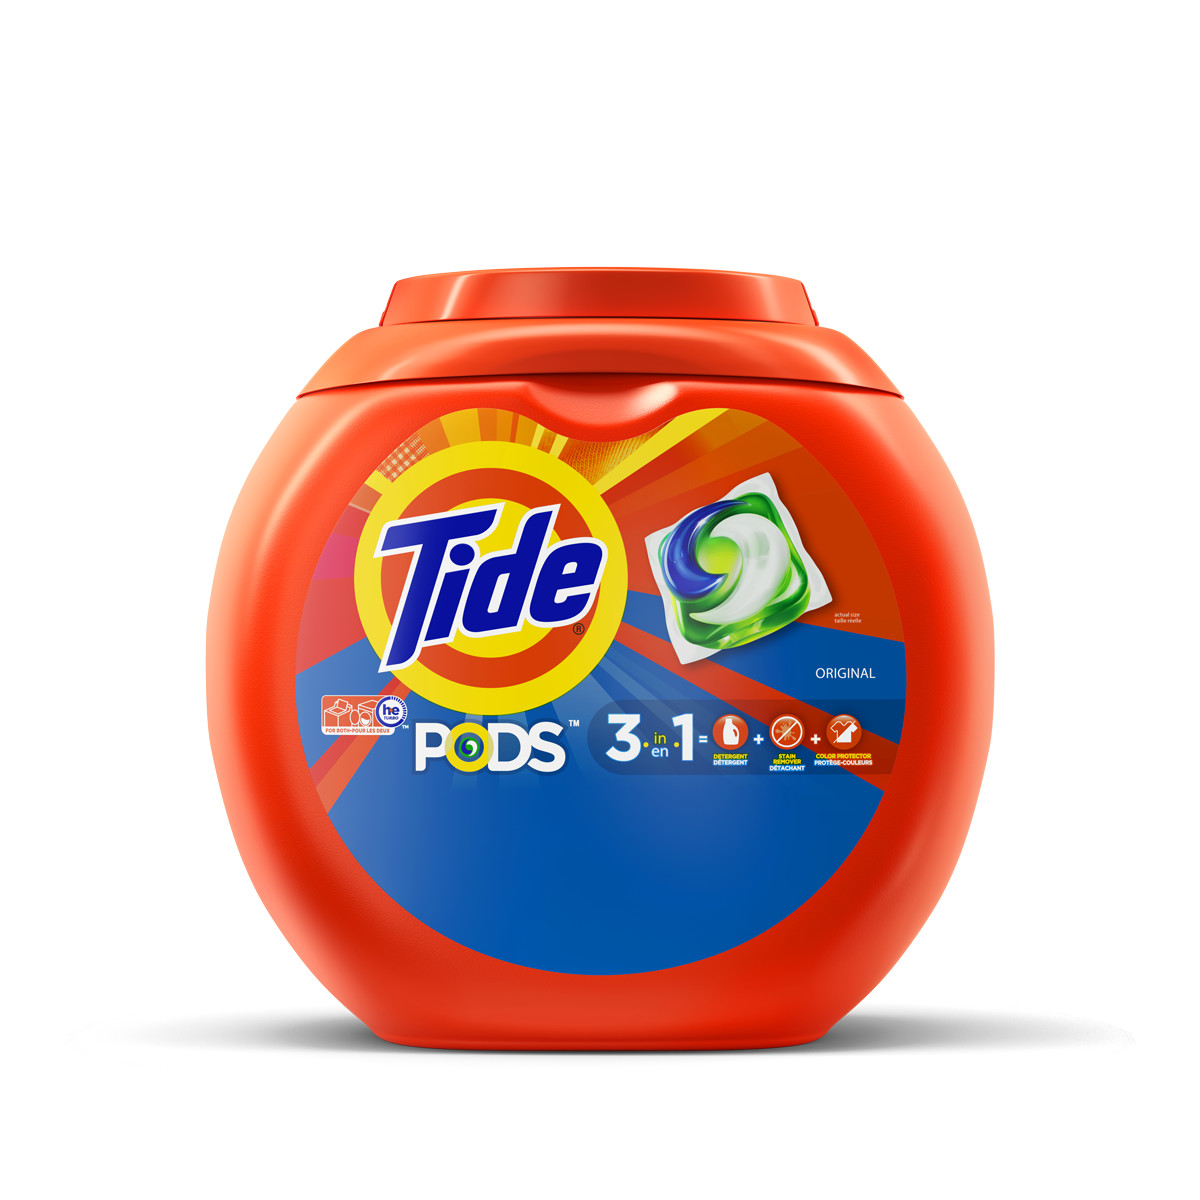 Detergente en cápsulas: ¿Cómo usarlas y sacarles el máximo partido?